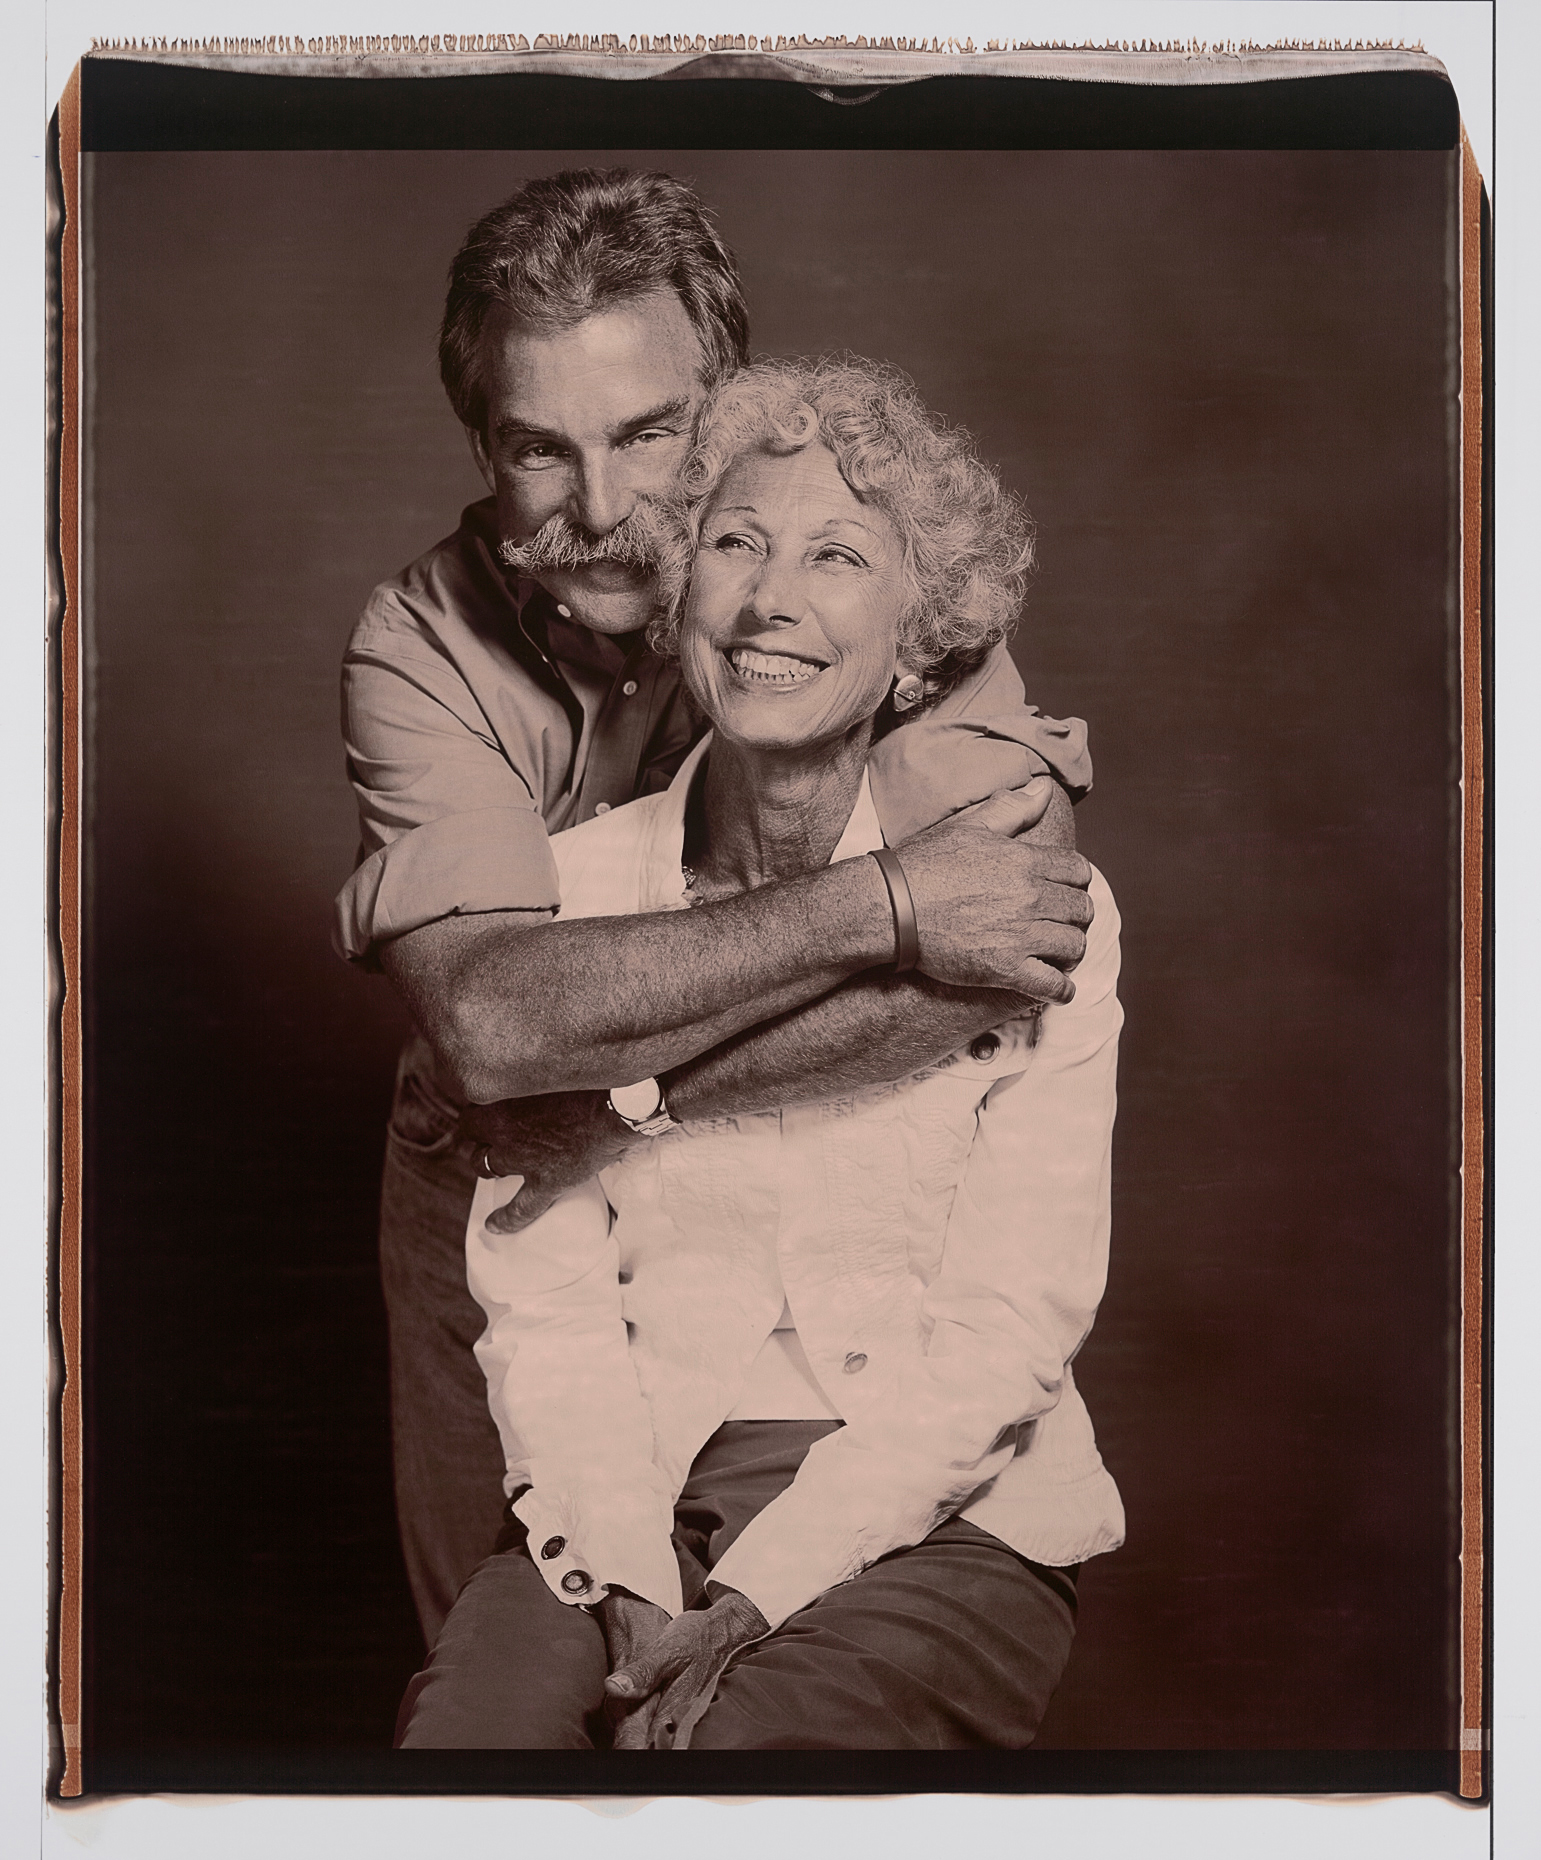 20x24" Black & White Polaroid portrait of married couple